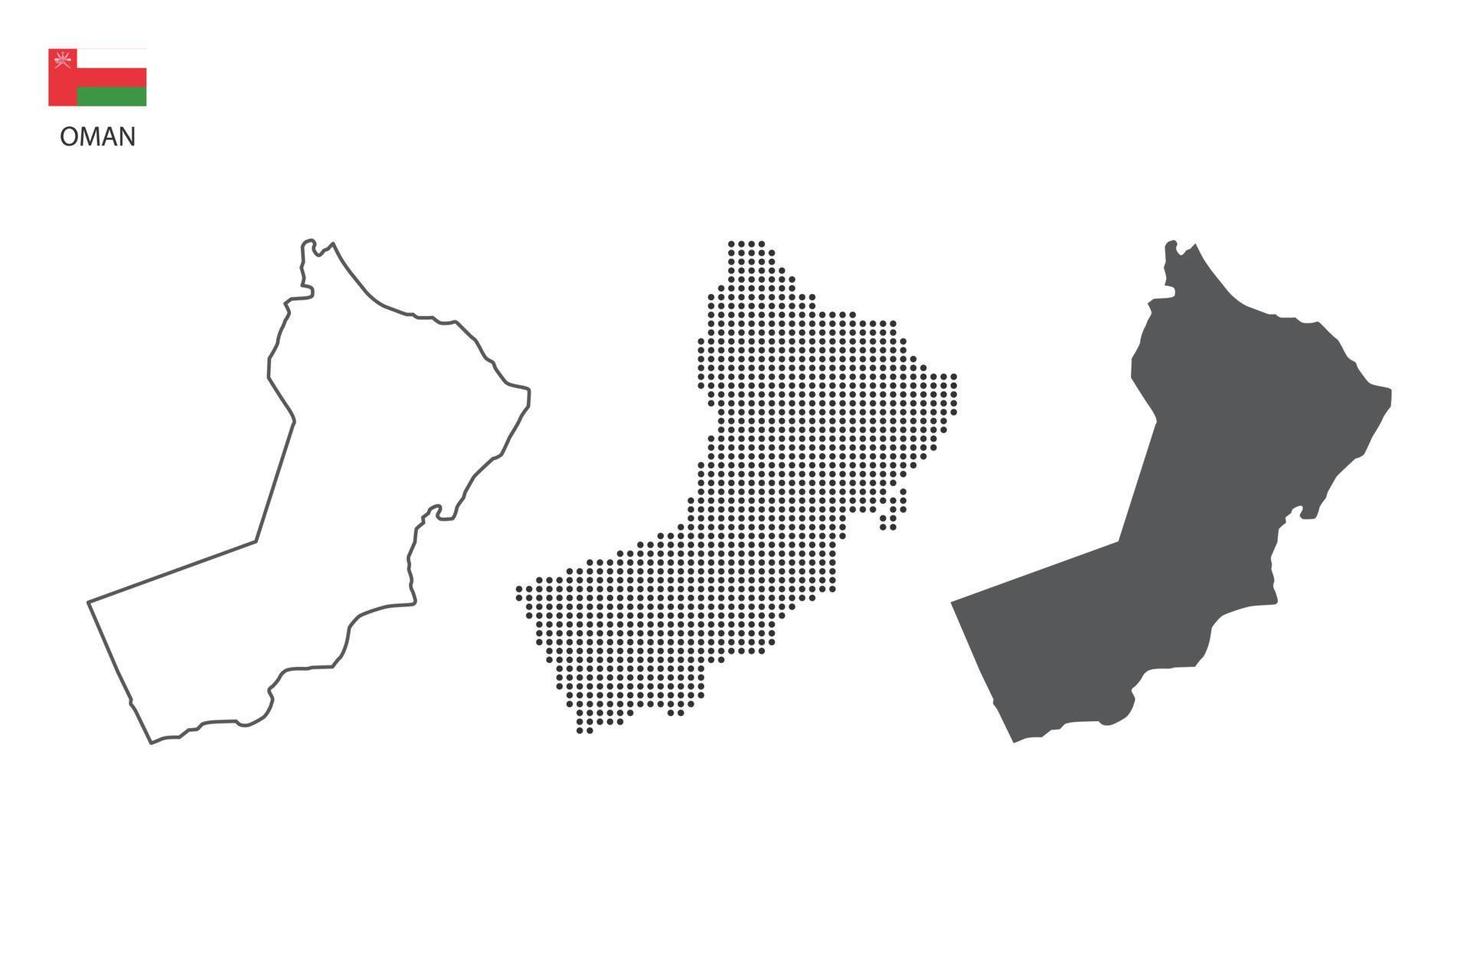 3 versies van Oman kaart stad vector door dun zwart schets eenvoud stijl, zwart punt stijl en donker schaduw stijl. allemaal in de wit achtergrond.